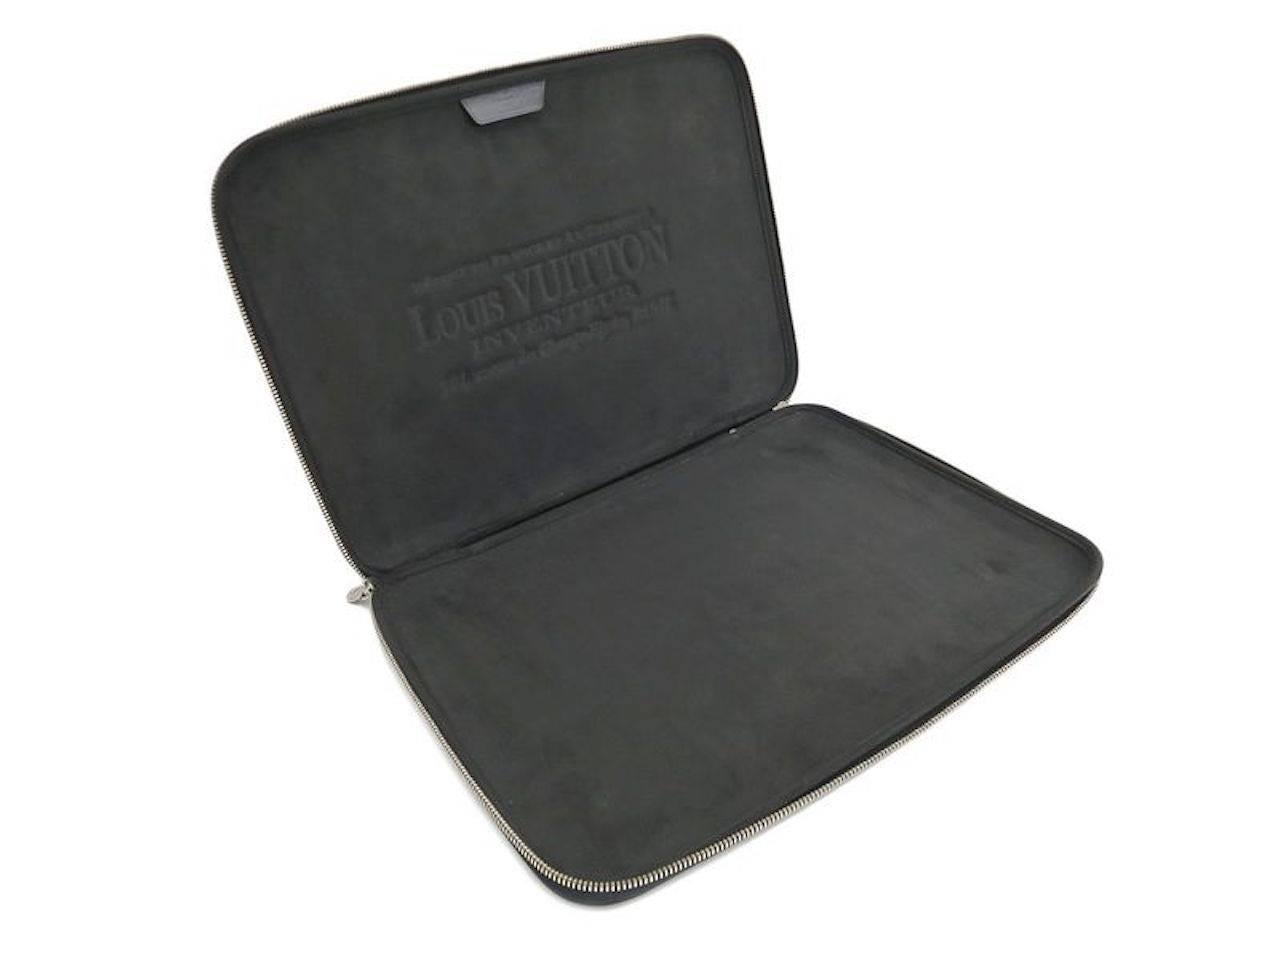 Louis Vuitton SOLD OUT Black Gray Men's Canvas Lap Top Tech Carrying Case Bag 1